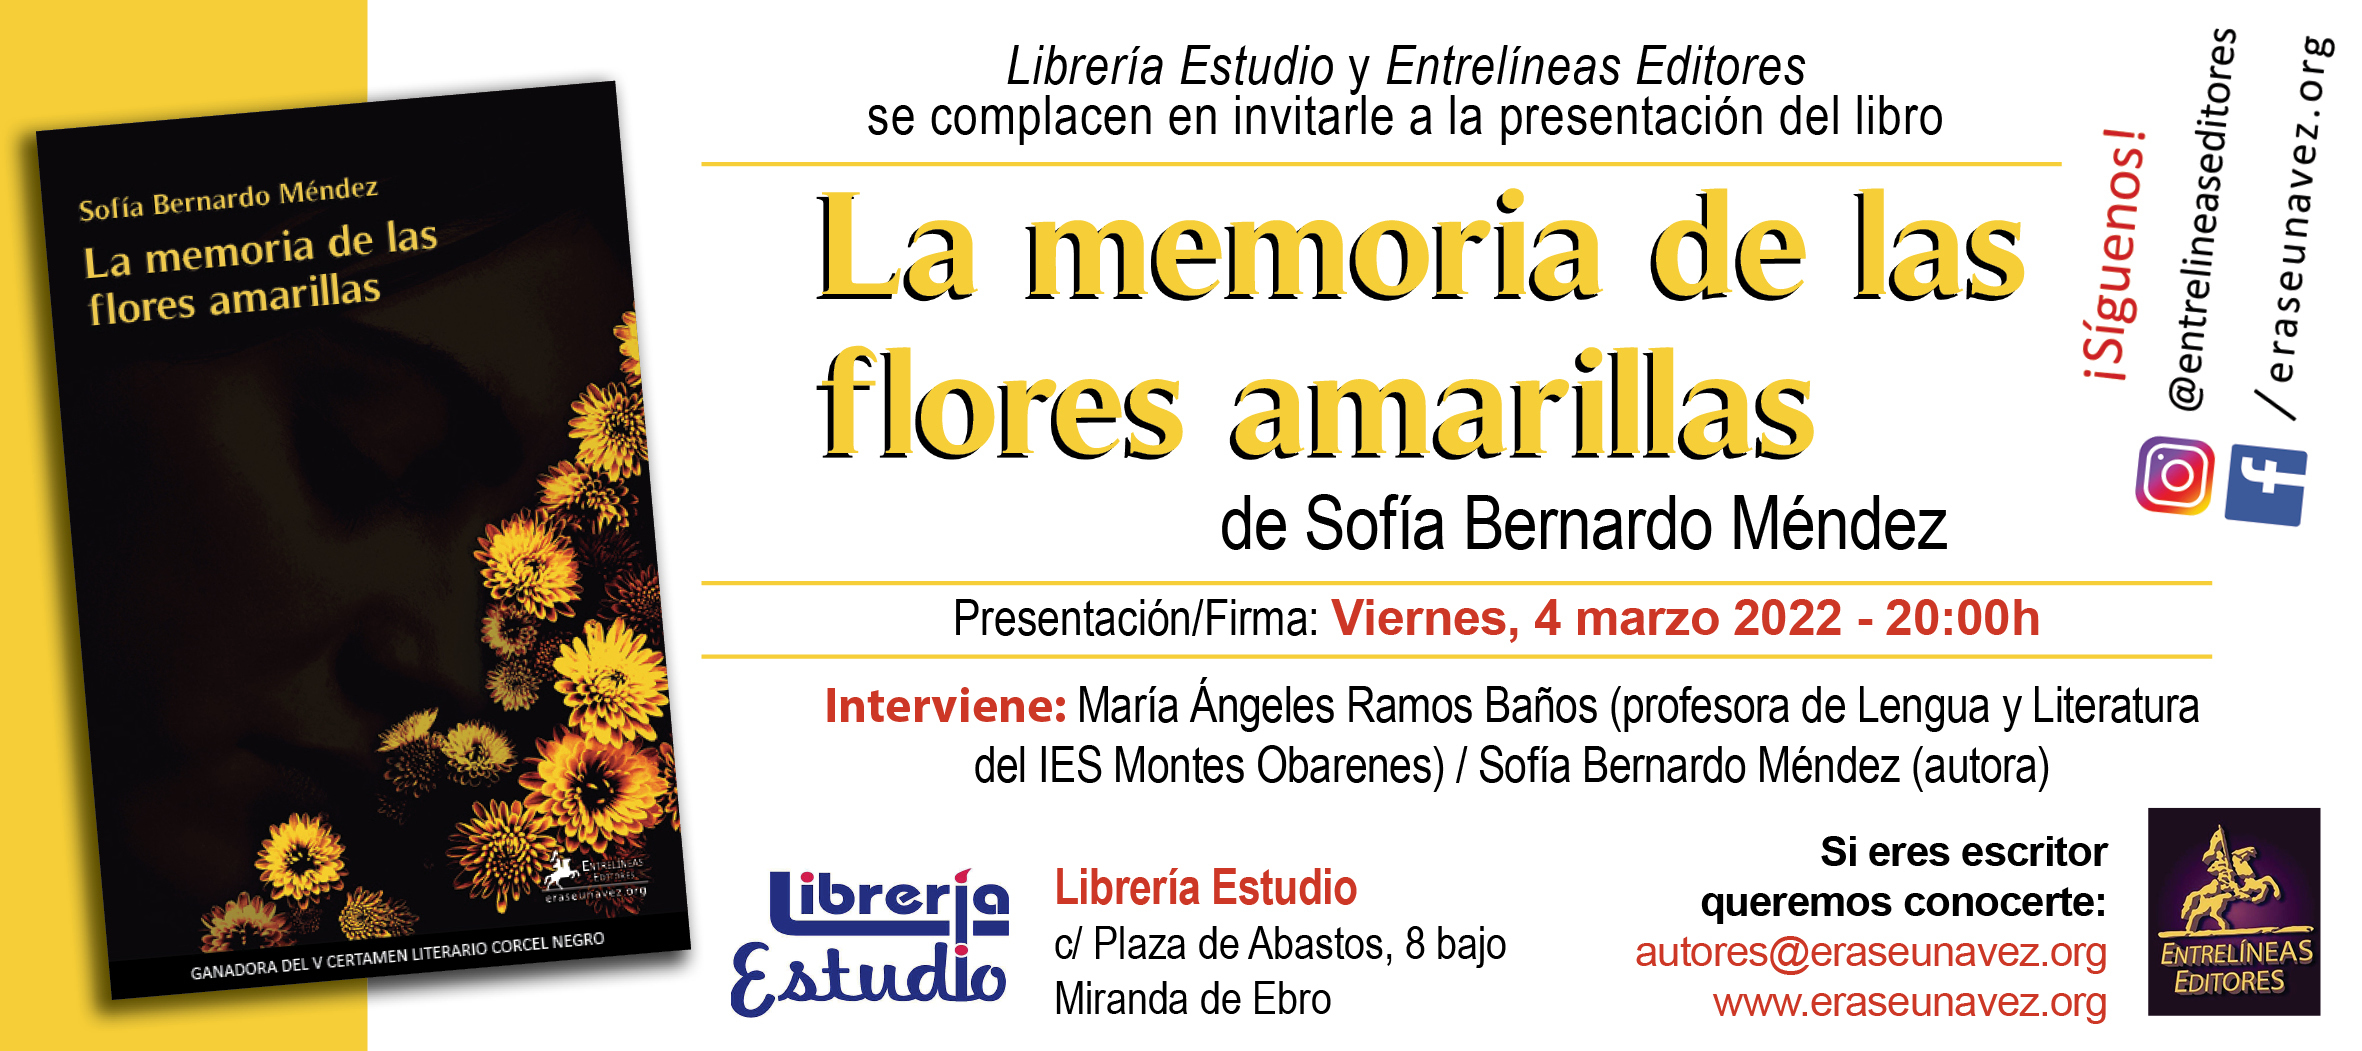 2022-03-04_memoria_de_las_flores_amarillas_-_invitacion